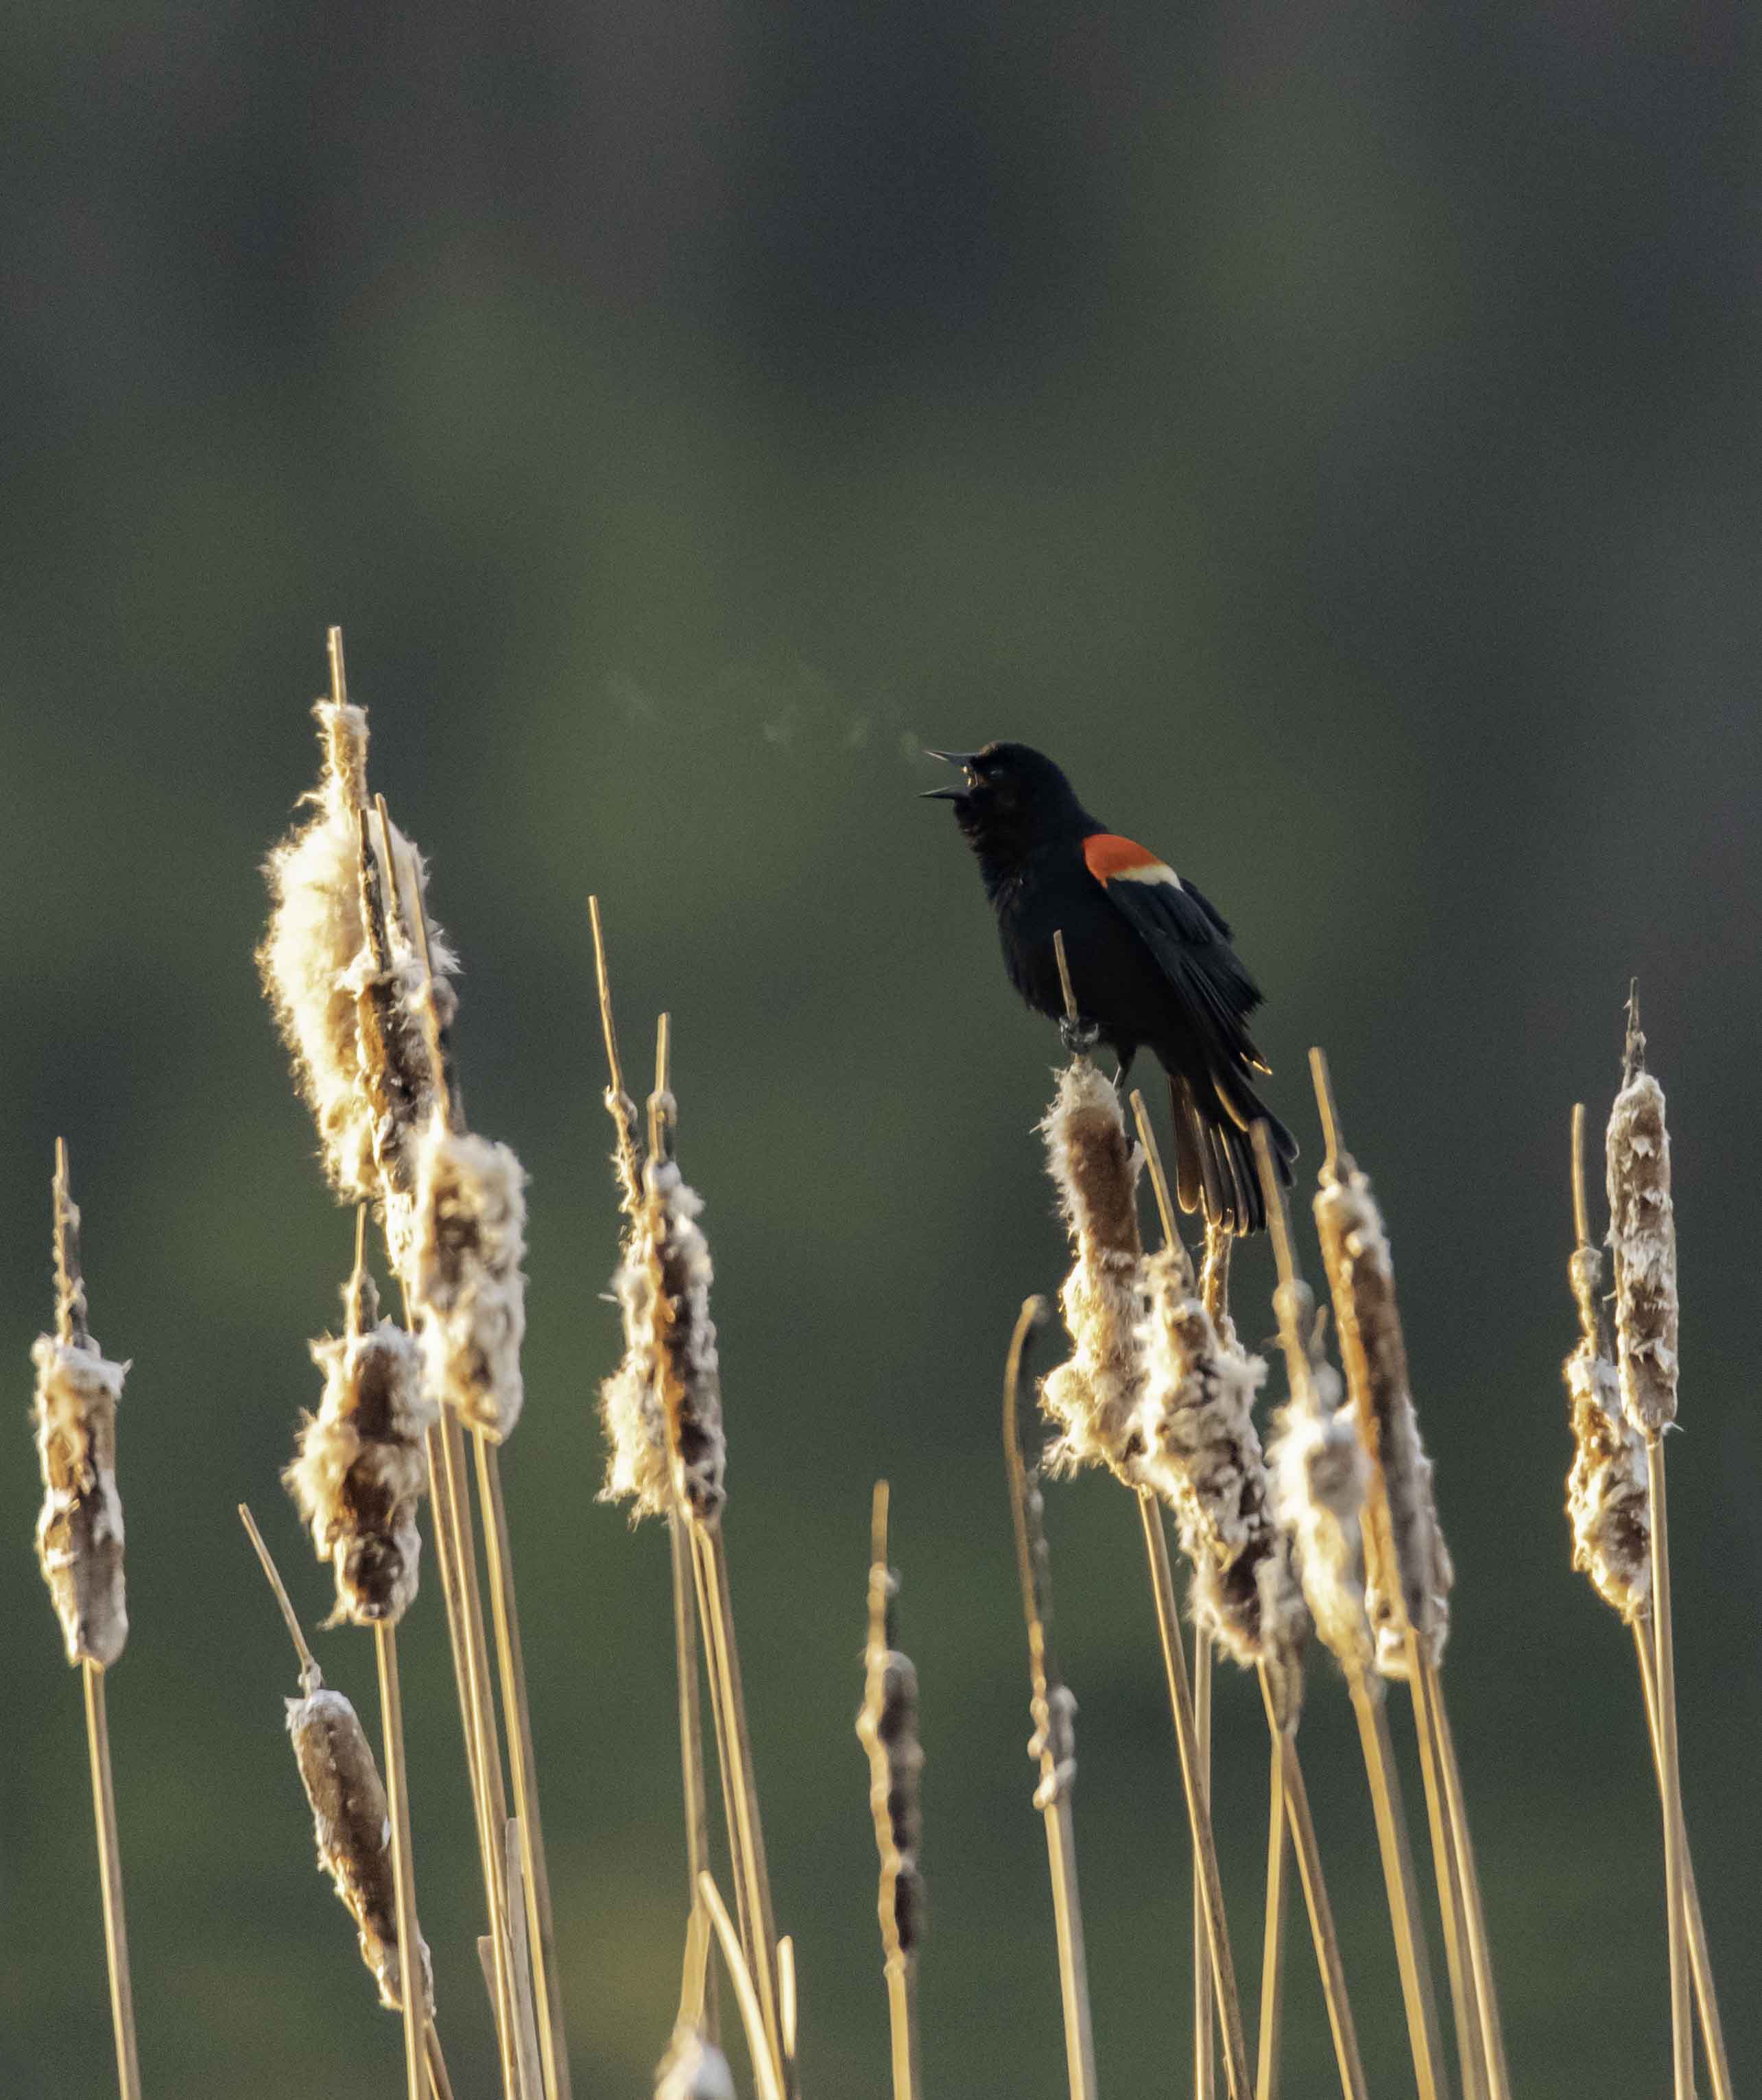 Red Wing Black Bird by Jason Stewart